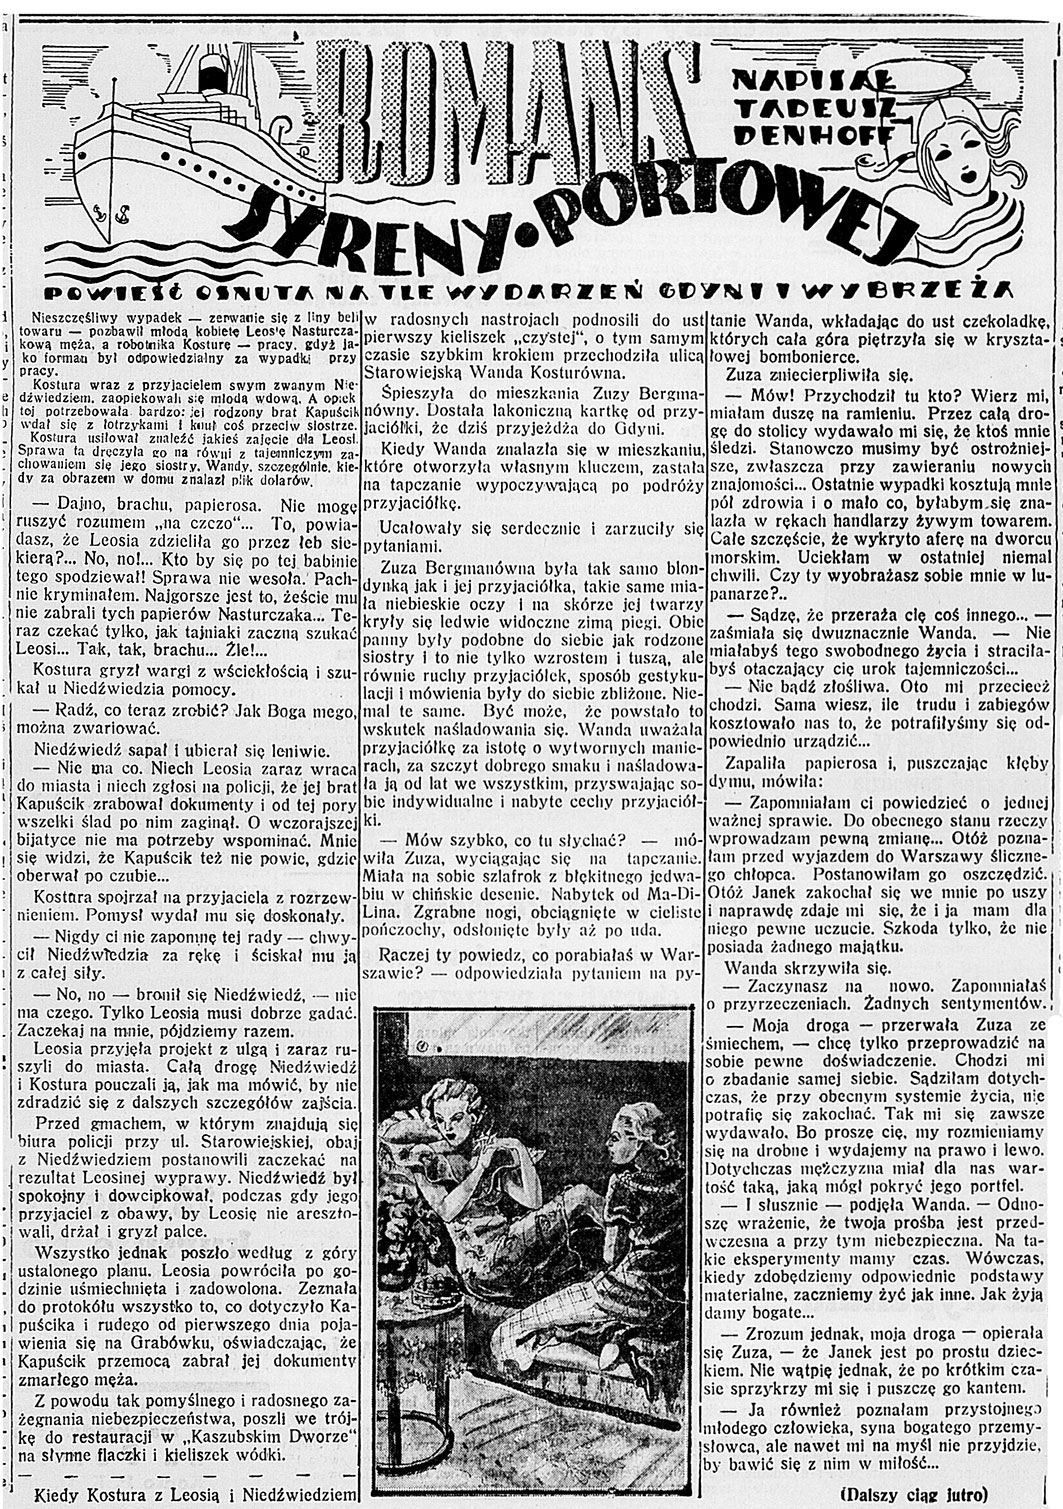 Romans syreny portowej. Powieść osnuta na tle wydarzeń Gdyni i wybrzeża / Tadeusz Denhoff. - 1938, nr 26, s. 4